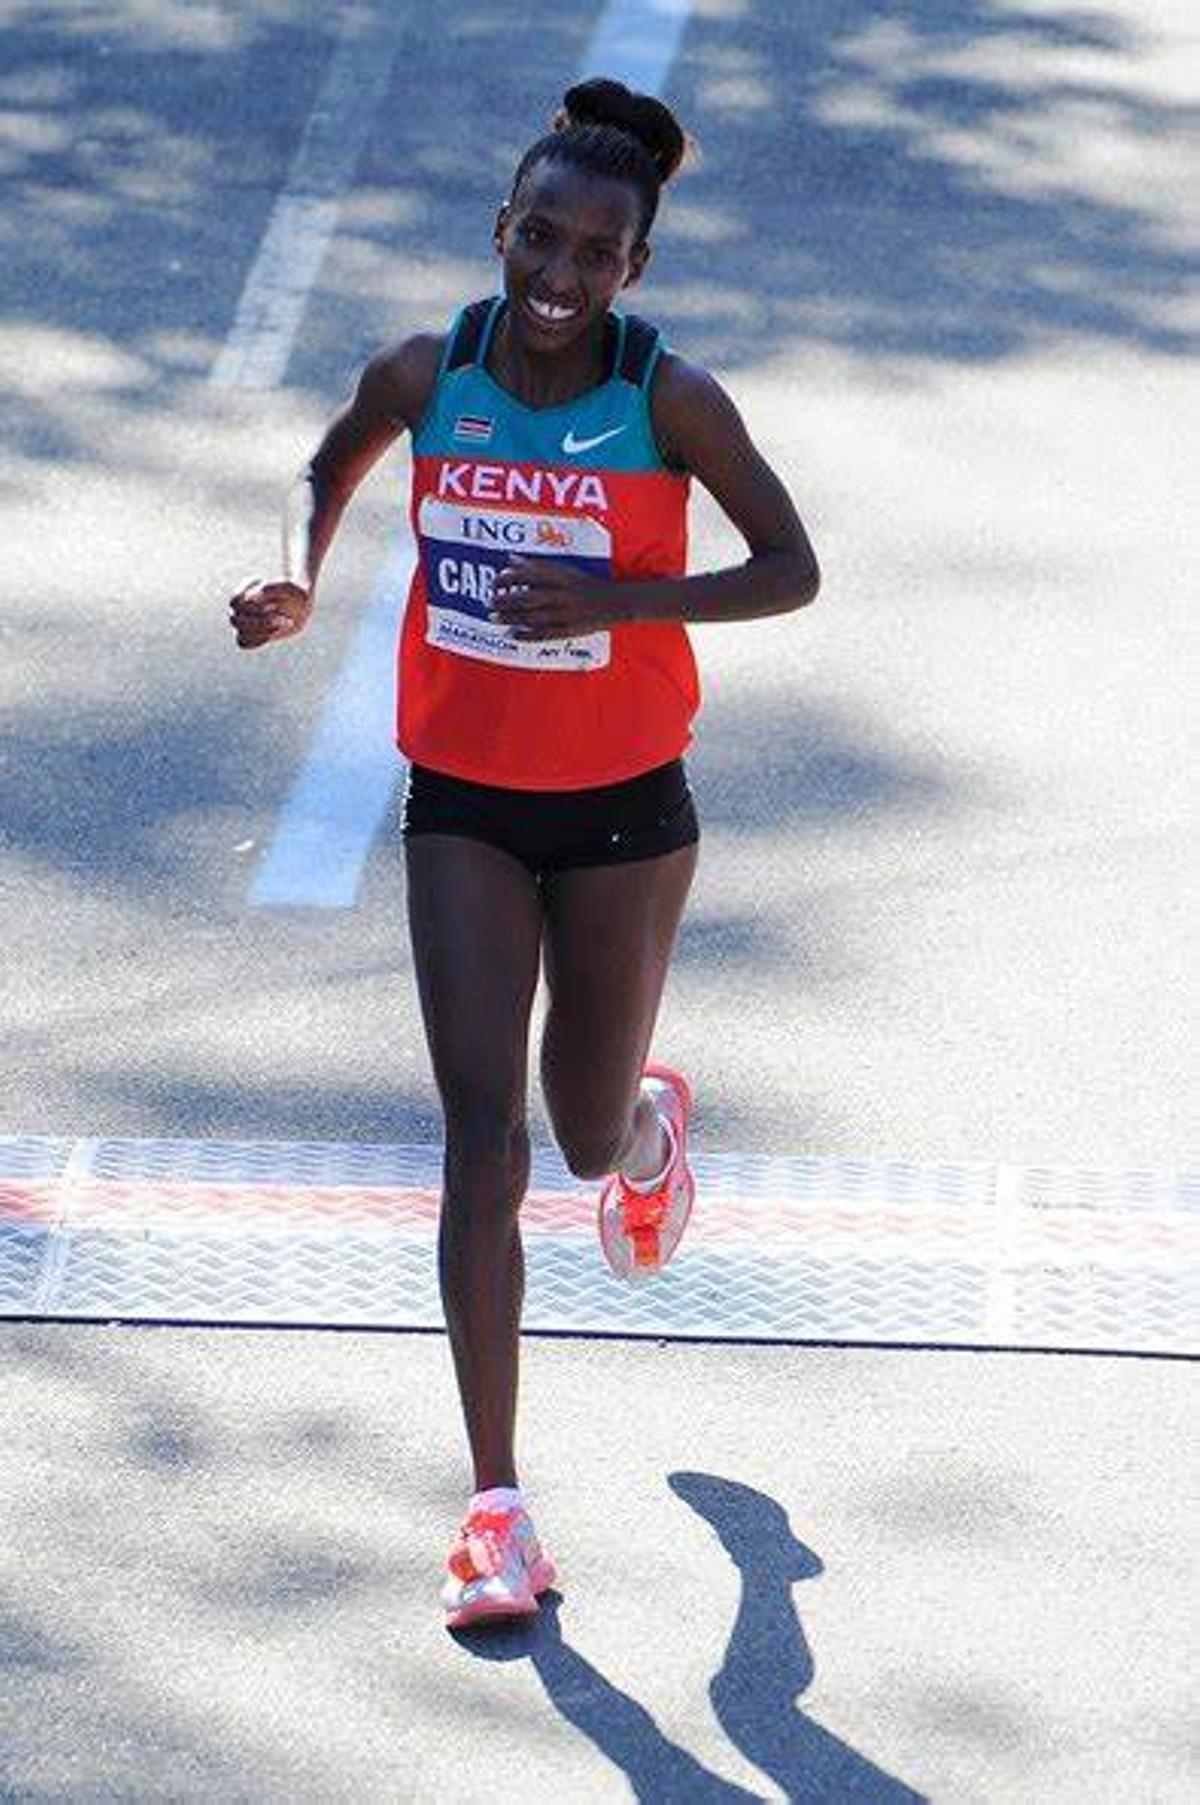 Caroline Cheptonui Kilel (KEN), ganadora de maratones como Boston, Daegu y Frankfurt entre otros. Recientemente cuarta clasificada en el Maratón de Málaga 2021 con una marca de 2h26:32.